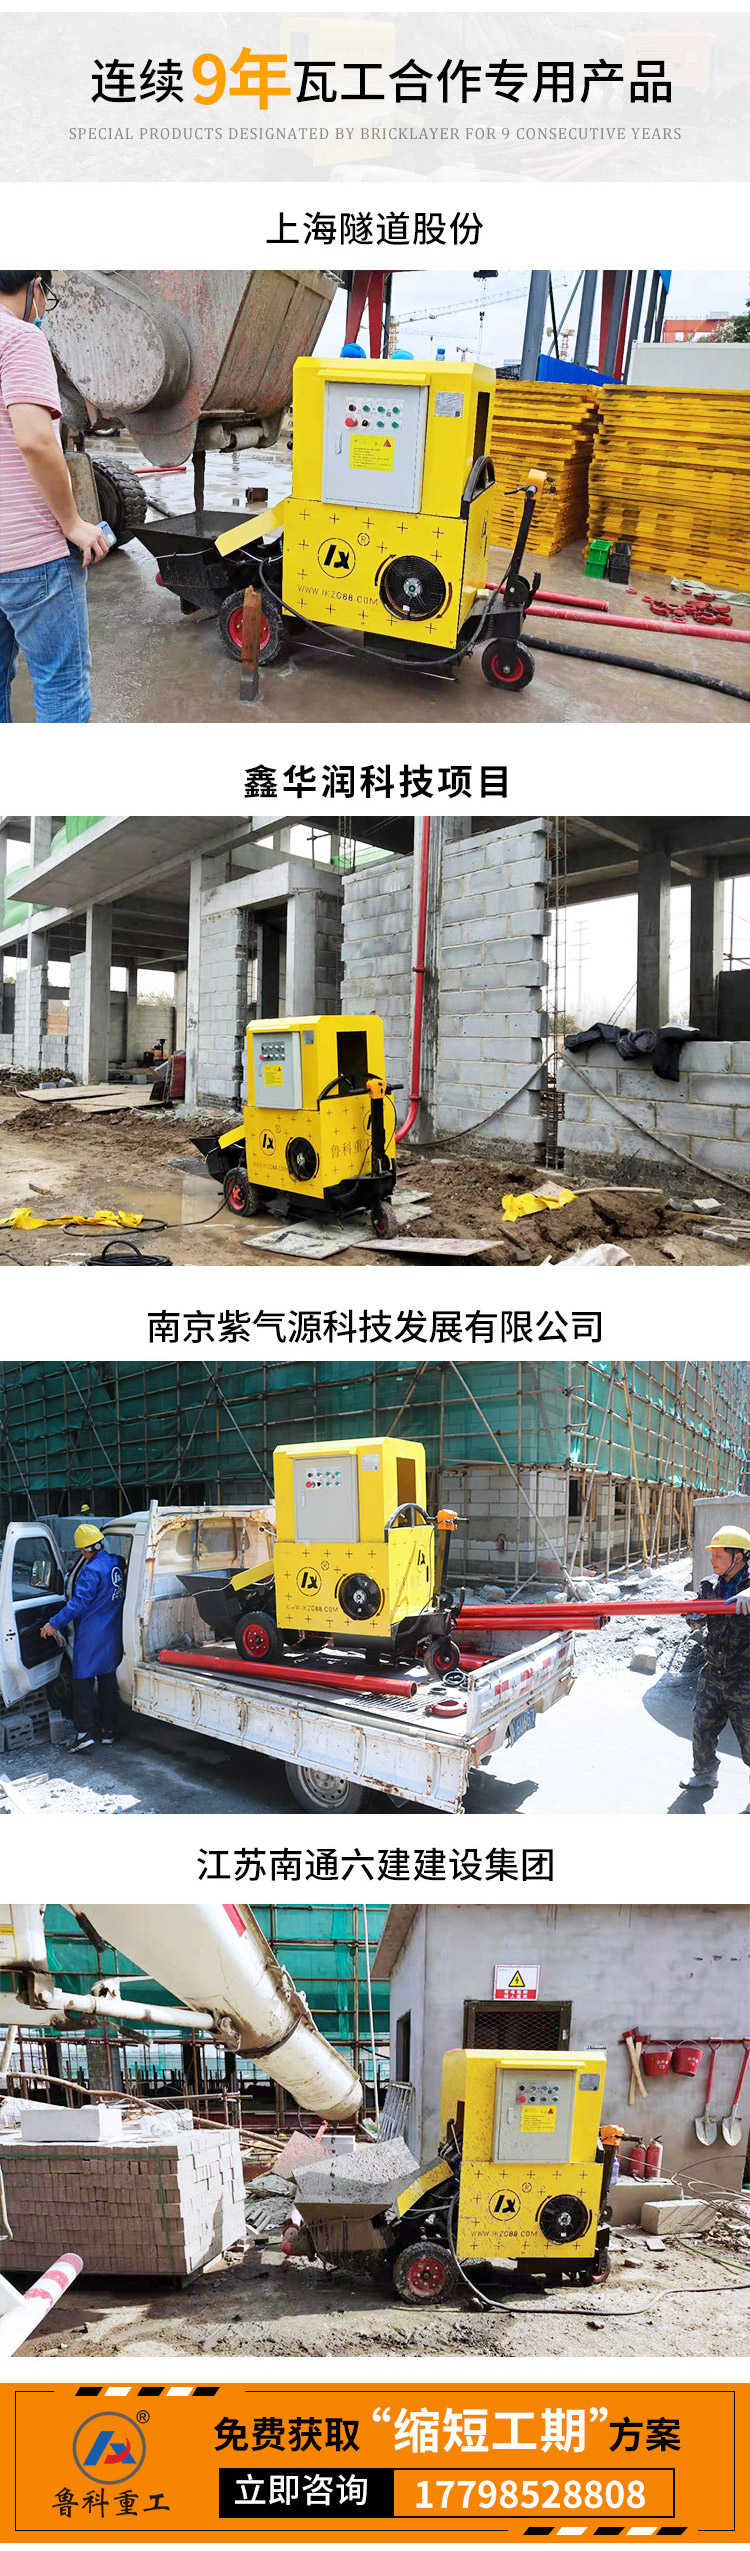 上海产小型电动注浆泵.jpg